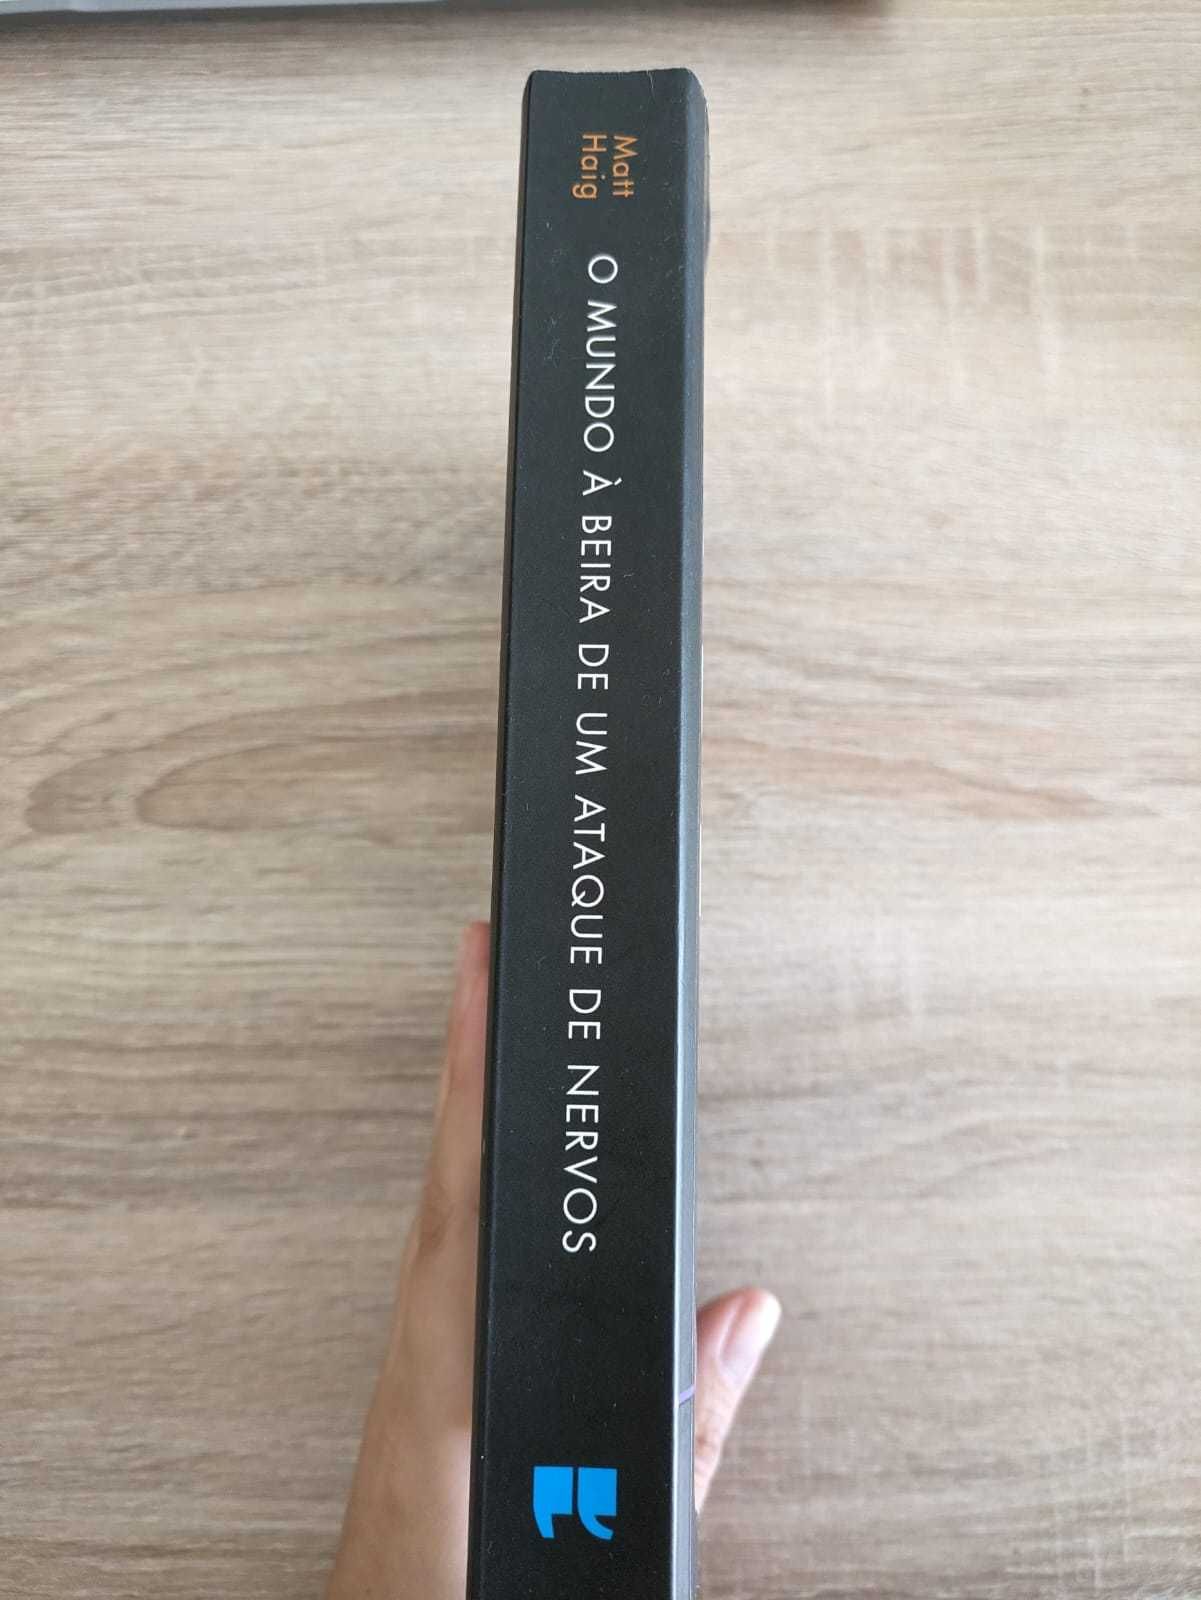 Livro "O Mundo á beira de um ataque de nervos" de Matt Haig